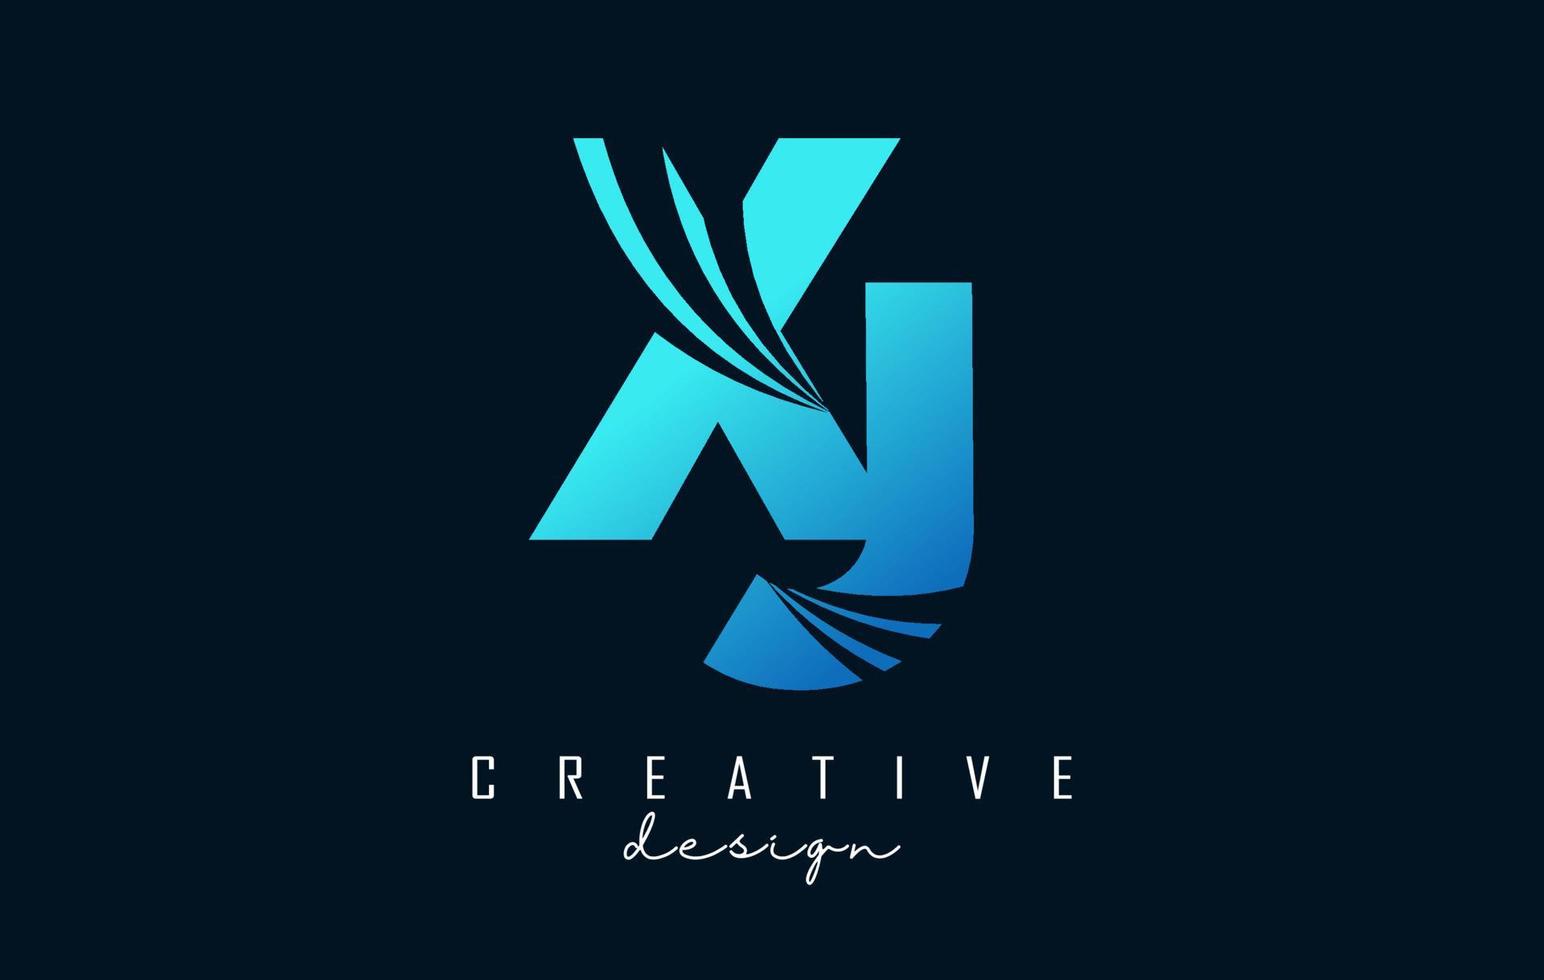 logo creativo lettere blu xj xj con linee guida e concept design stradale. lettere con disegno geometrico. vettore